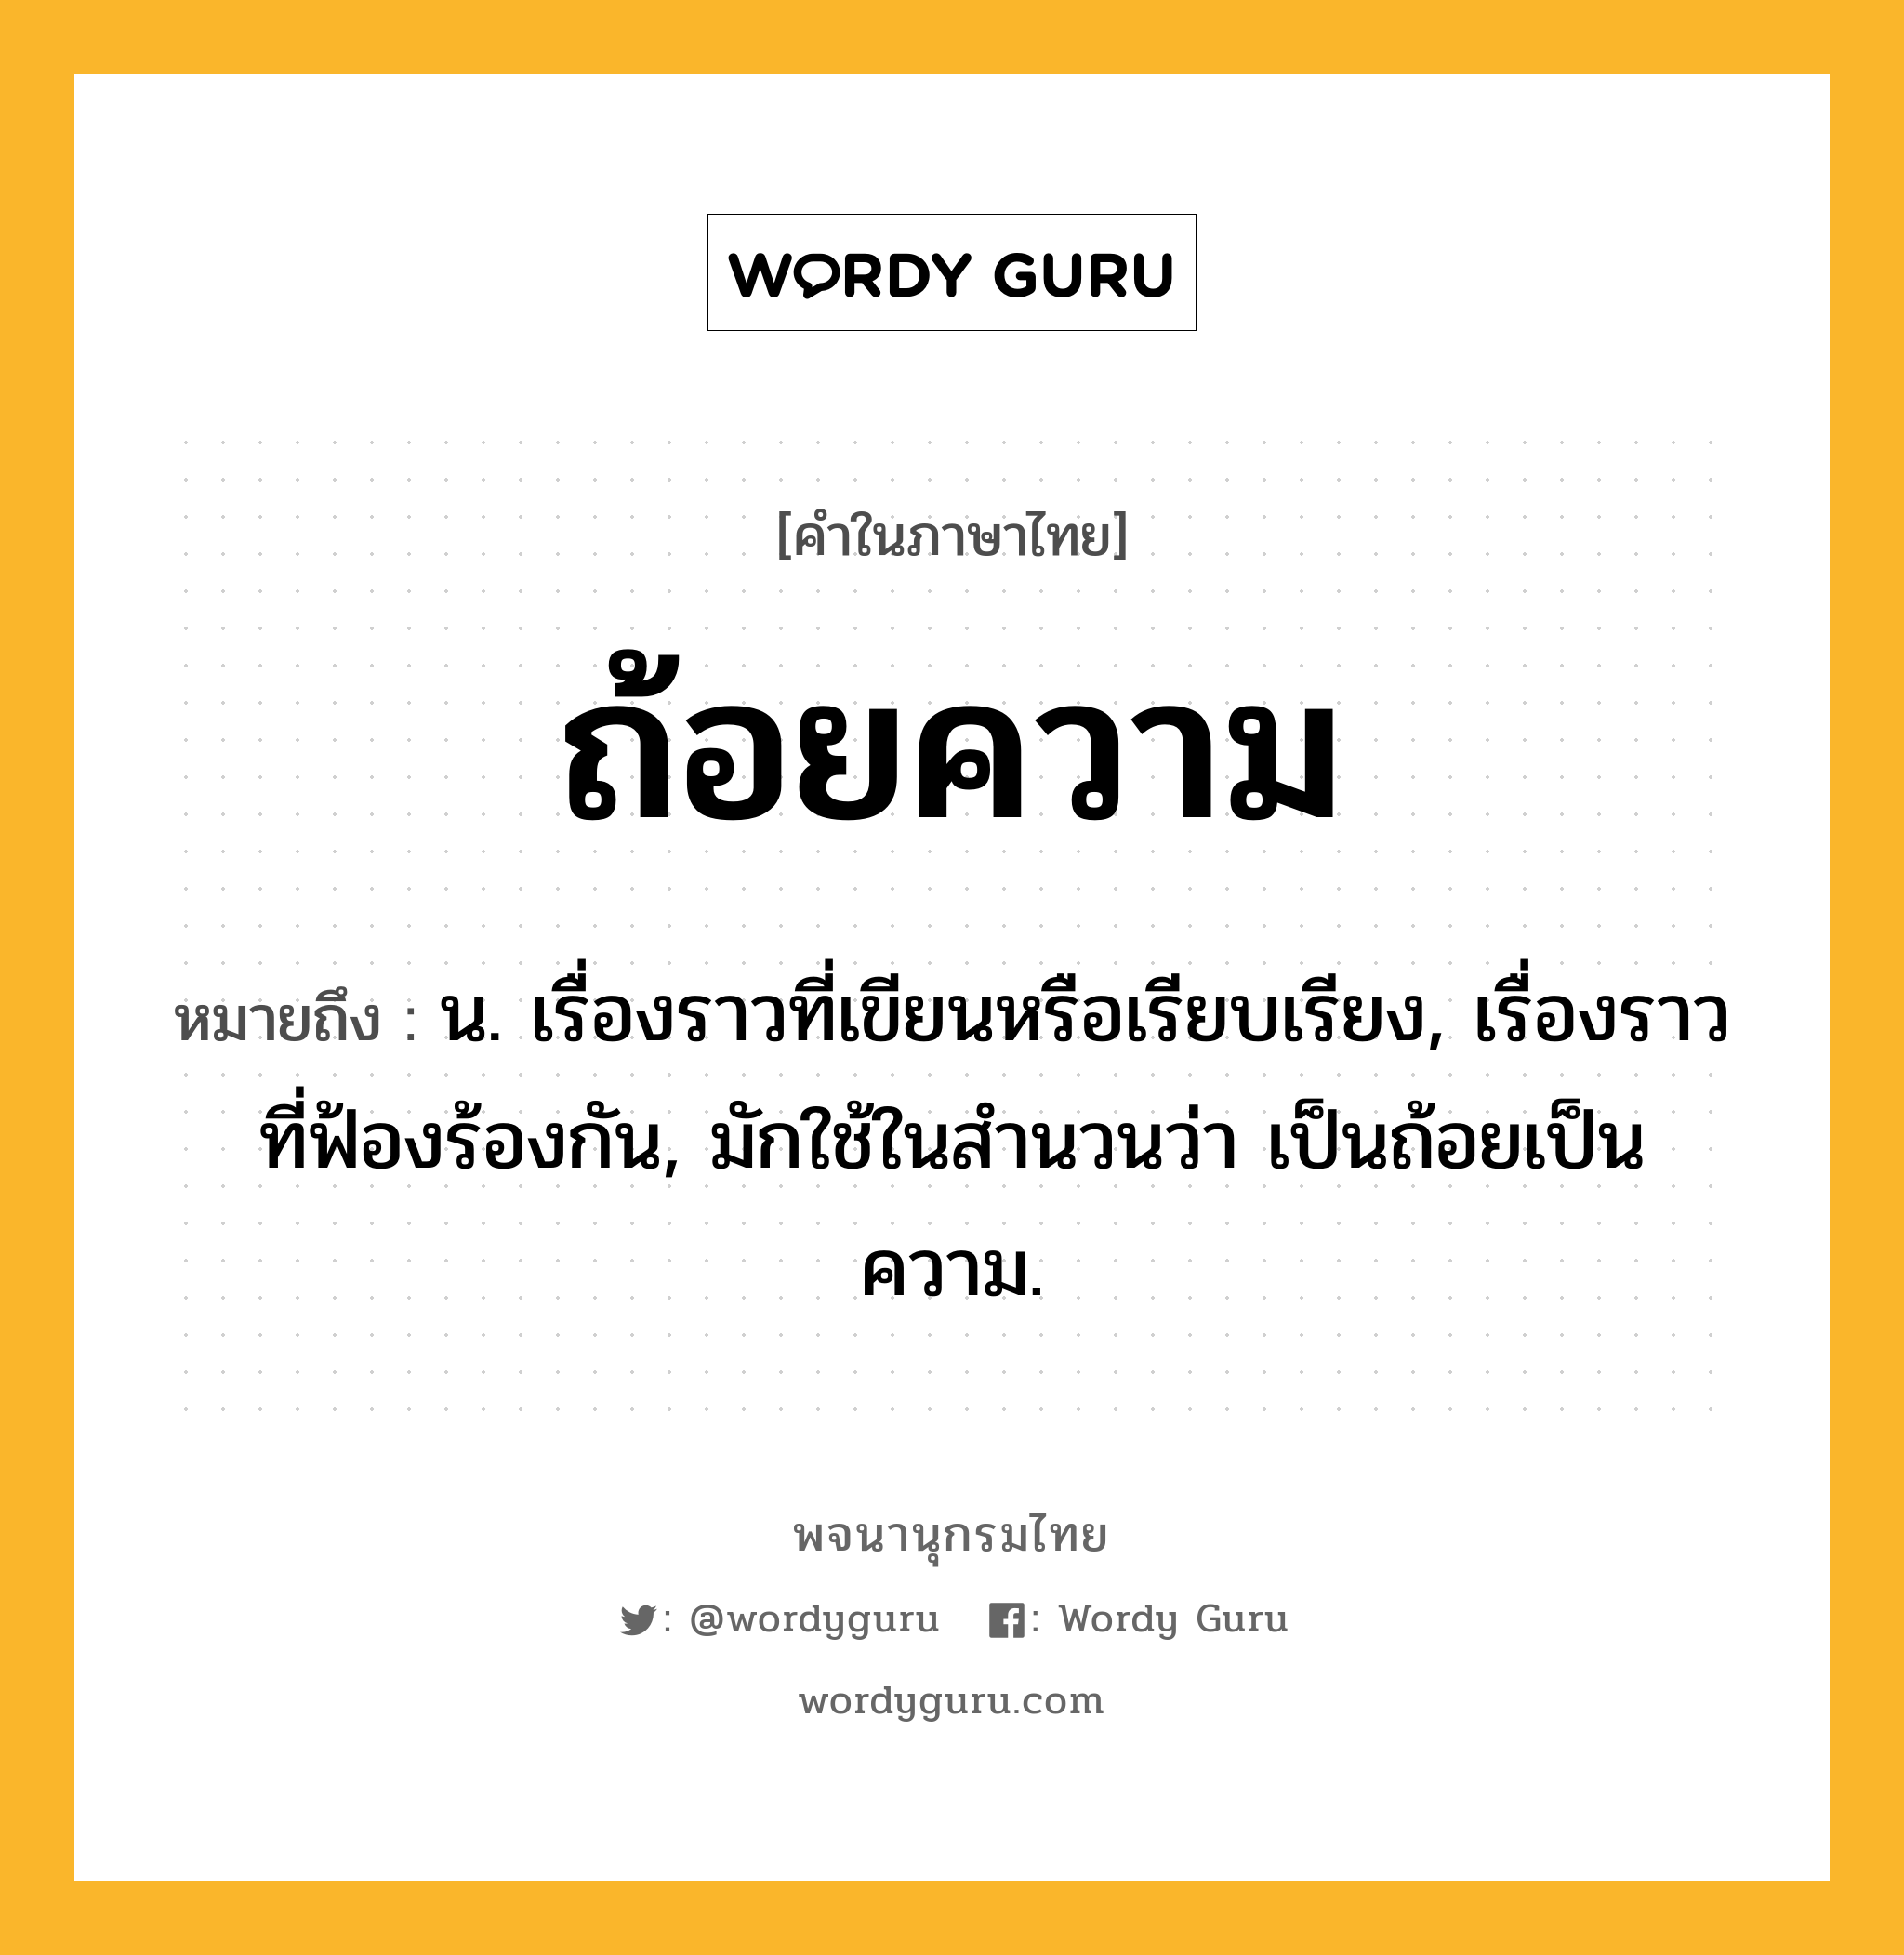 ถ้อยความ ความหมาย หมายถึงอะไร?, คำในภาษาไทย ถ้อยความ หมายถึง น. เรื่องราวที่เขียนหรือเรียบเรียง, เรื่องราวที่ฟ้องร้องกัน, มักใช้ในสํานวนว่า เป็นถ้อยเป็นความ.